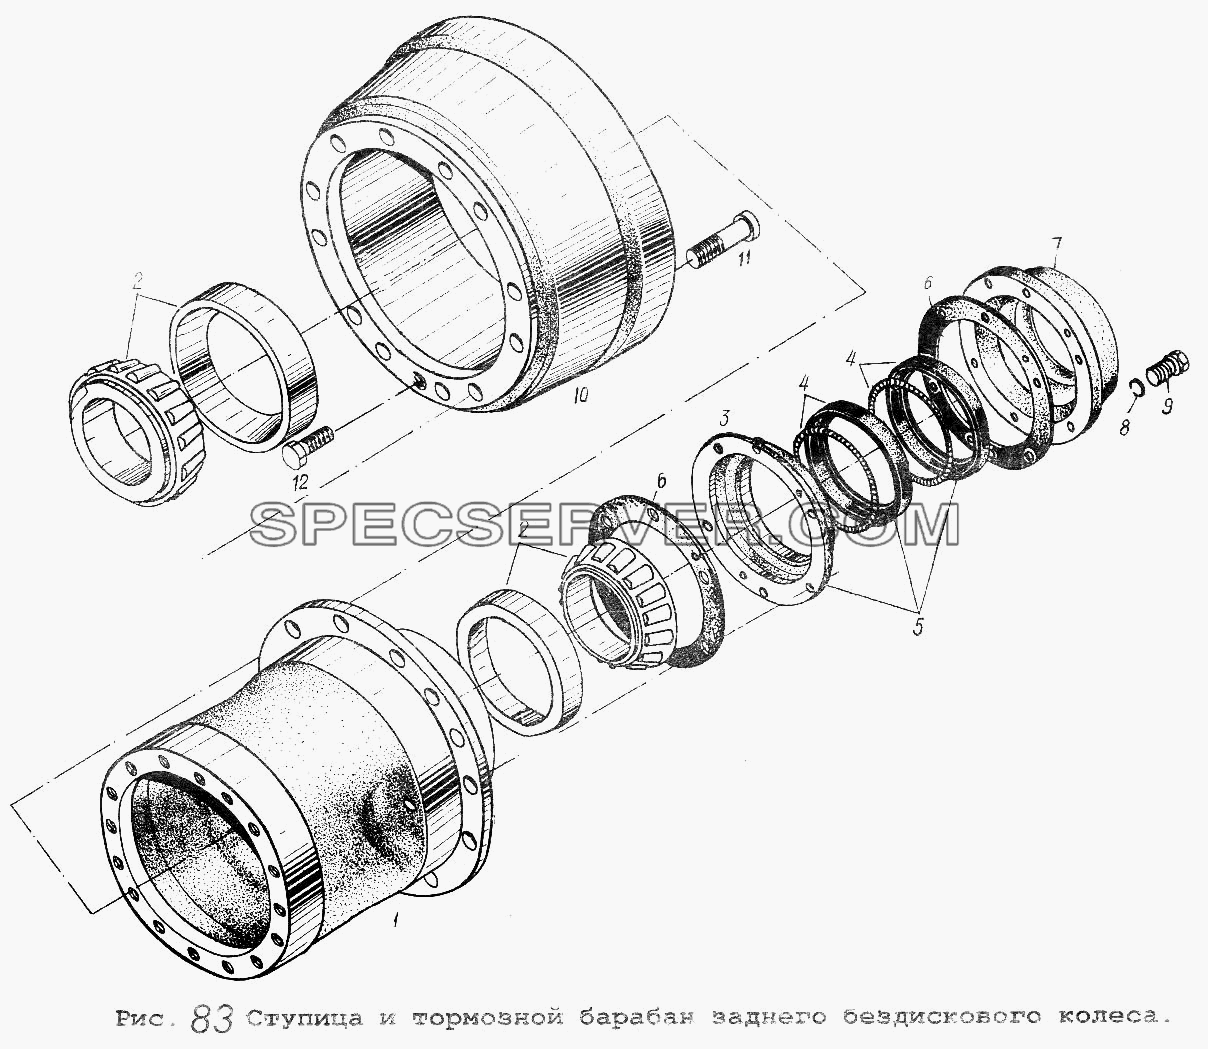 Ступица и тормозной барабан заднего бездискового колеса для МАЗ-5551 (список запасных частей)